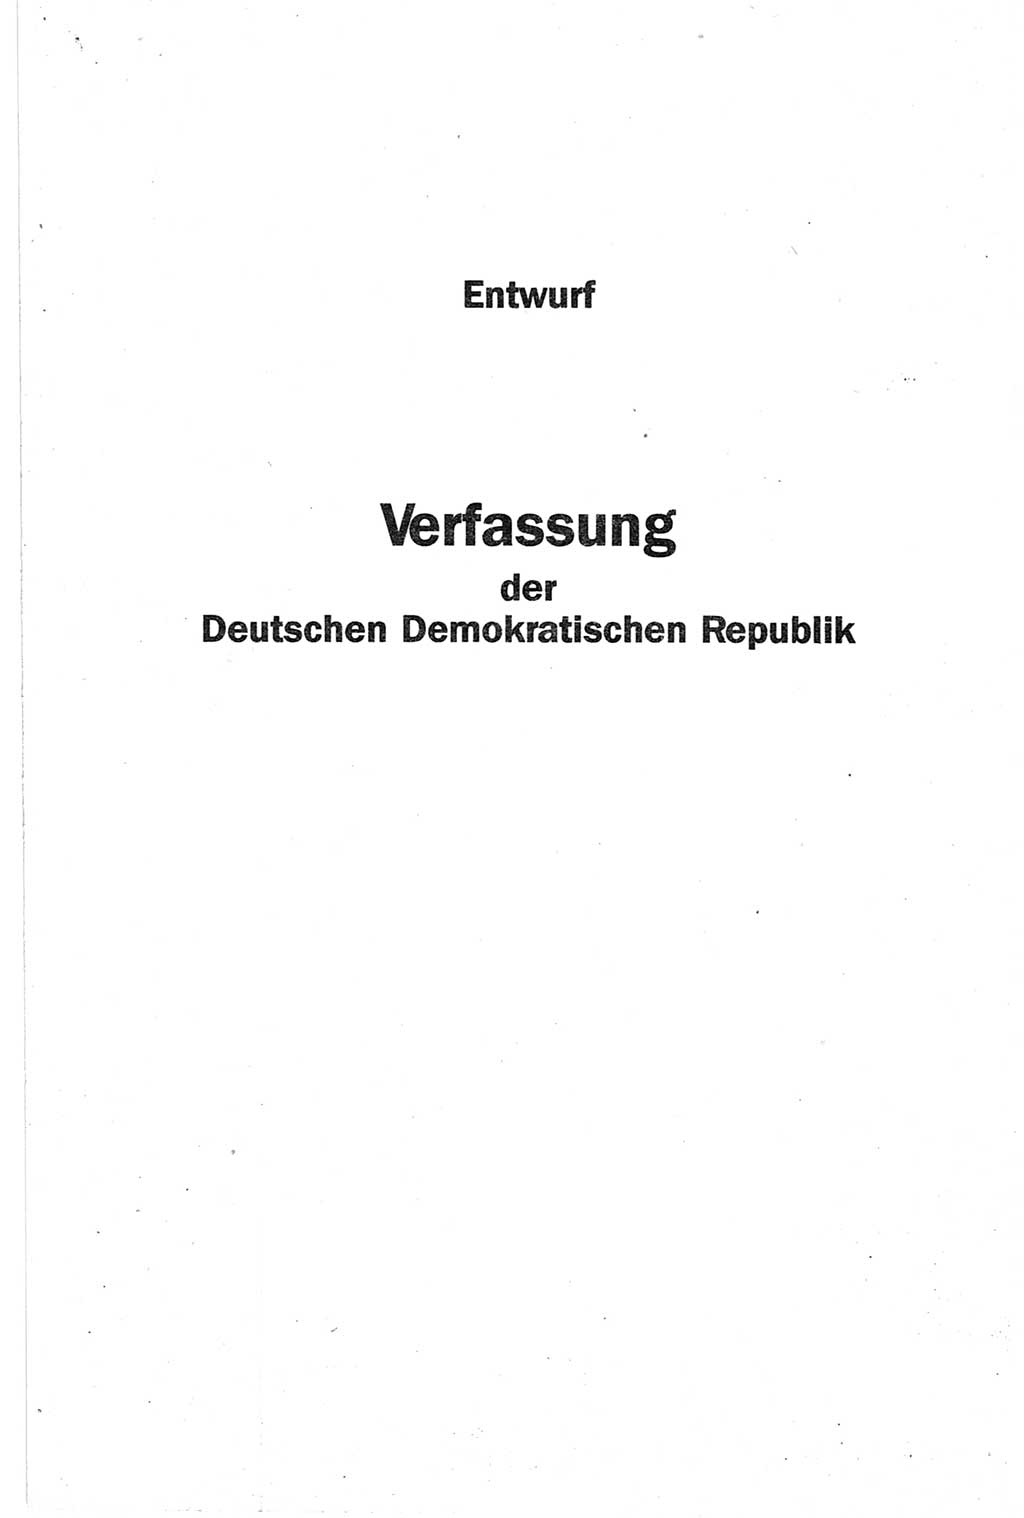 Entwurf Verfassung der Deutschen Demokratischen Republik (DDR), Arbeitsgruppe "Neue Verfassung der DDR" des Runden Tisches, Berlin 1990, Seite 7 (Entw. Verf. DDR 1990, S. 7)